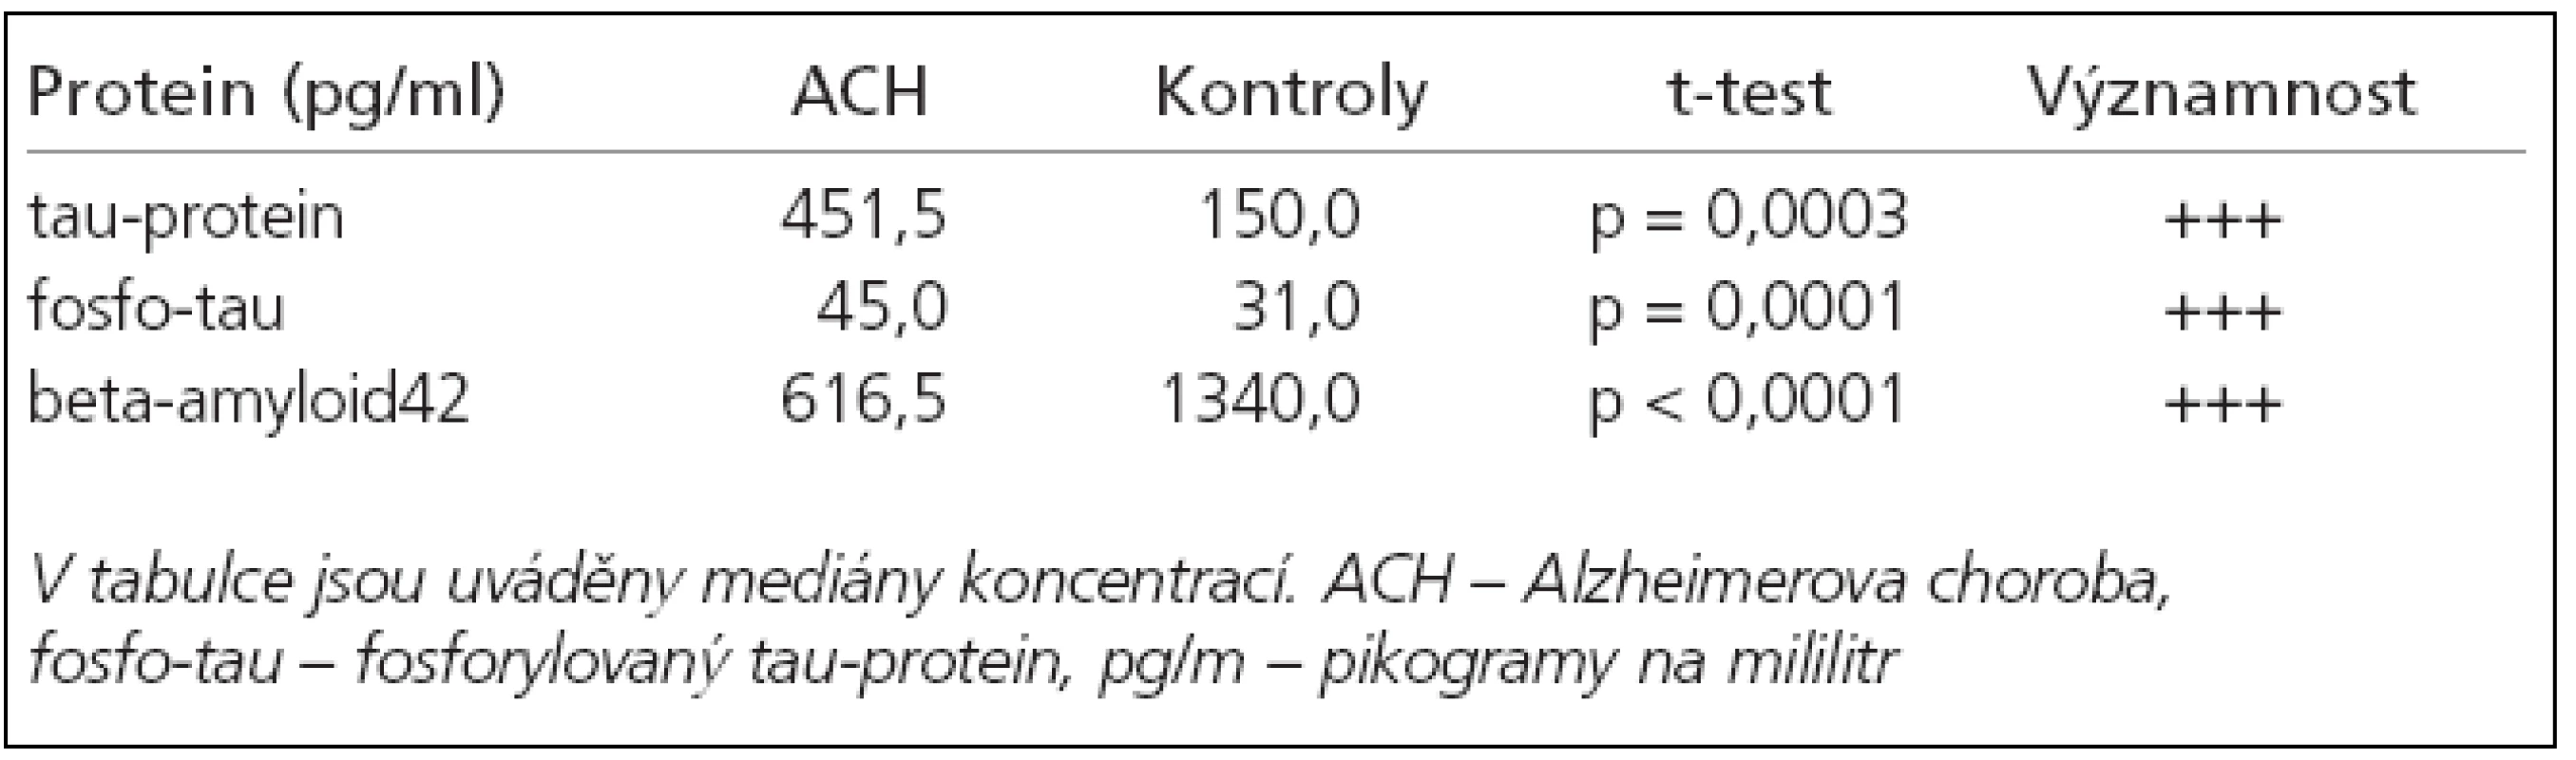 Medián naměřených koncentrací tau proteinu, fosforylovaného tauproteinu a beta-amyloidu42 (pg/ml) ve skupině ACH proti kontrolní skupině.